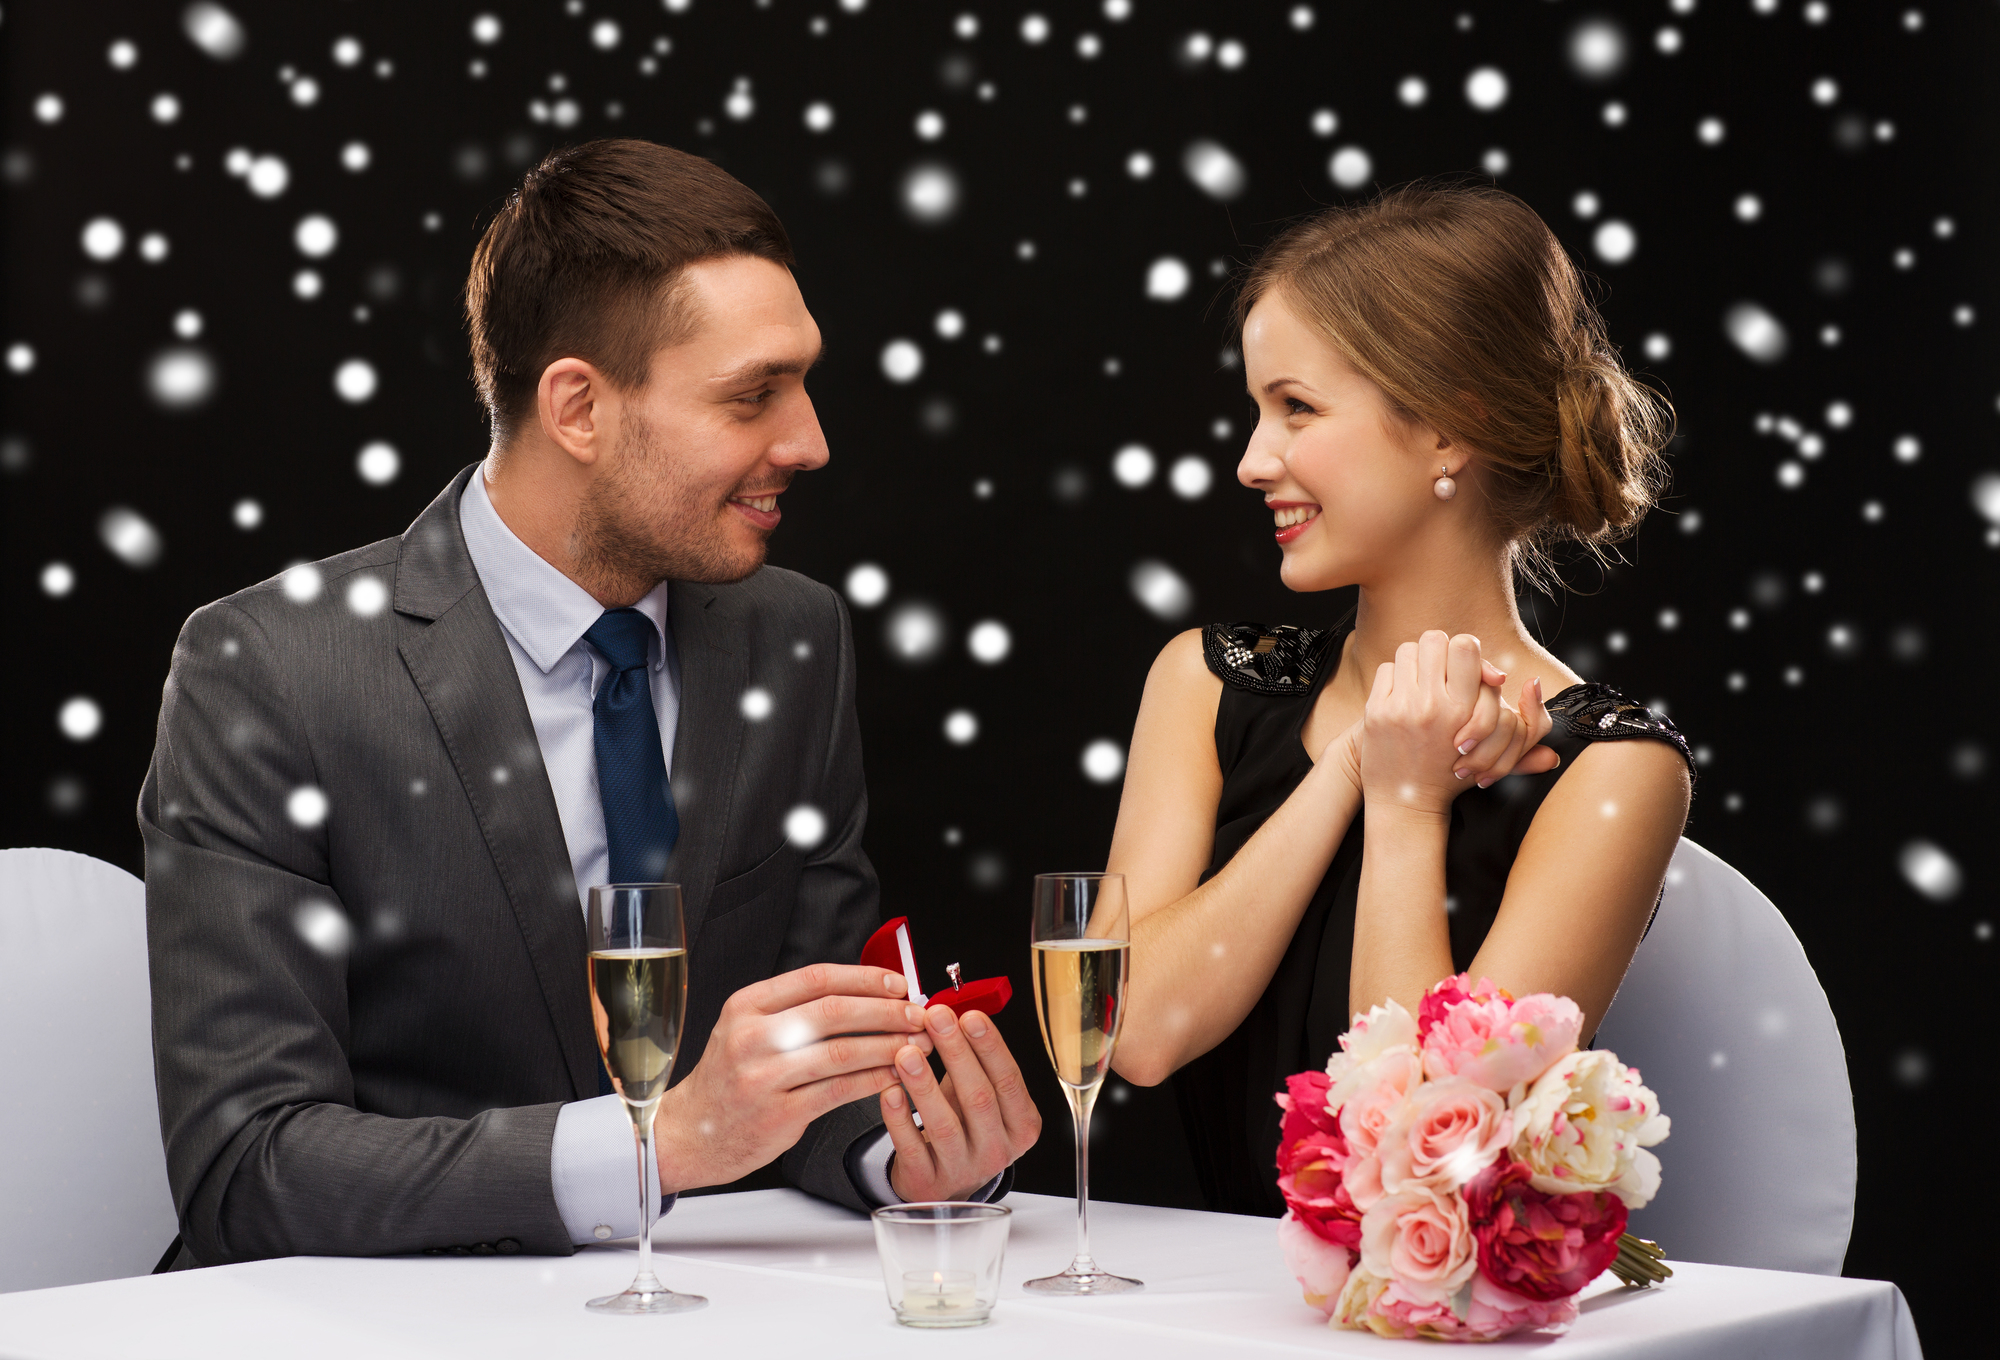 女性を感動させる レストランプロポーズを成功させる秘訣 プロポーズ準備室 最高のプロポーズを知って相談できるサイト